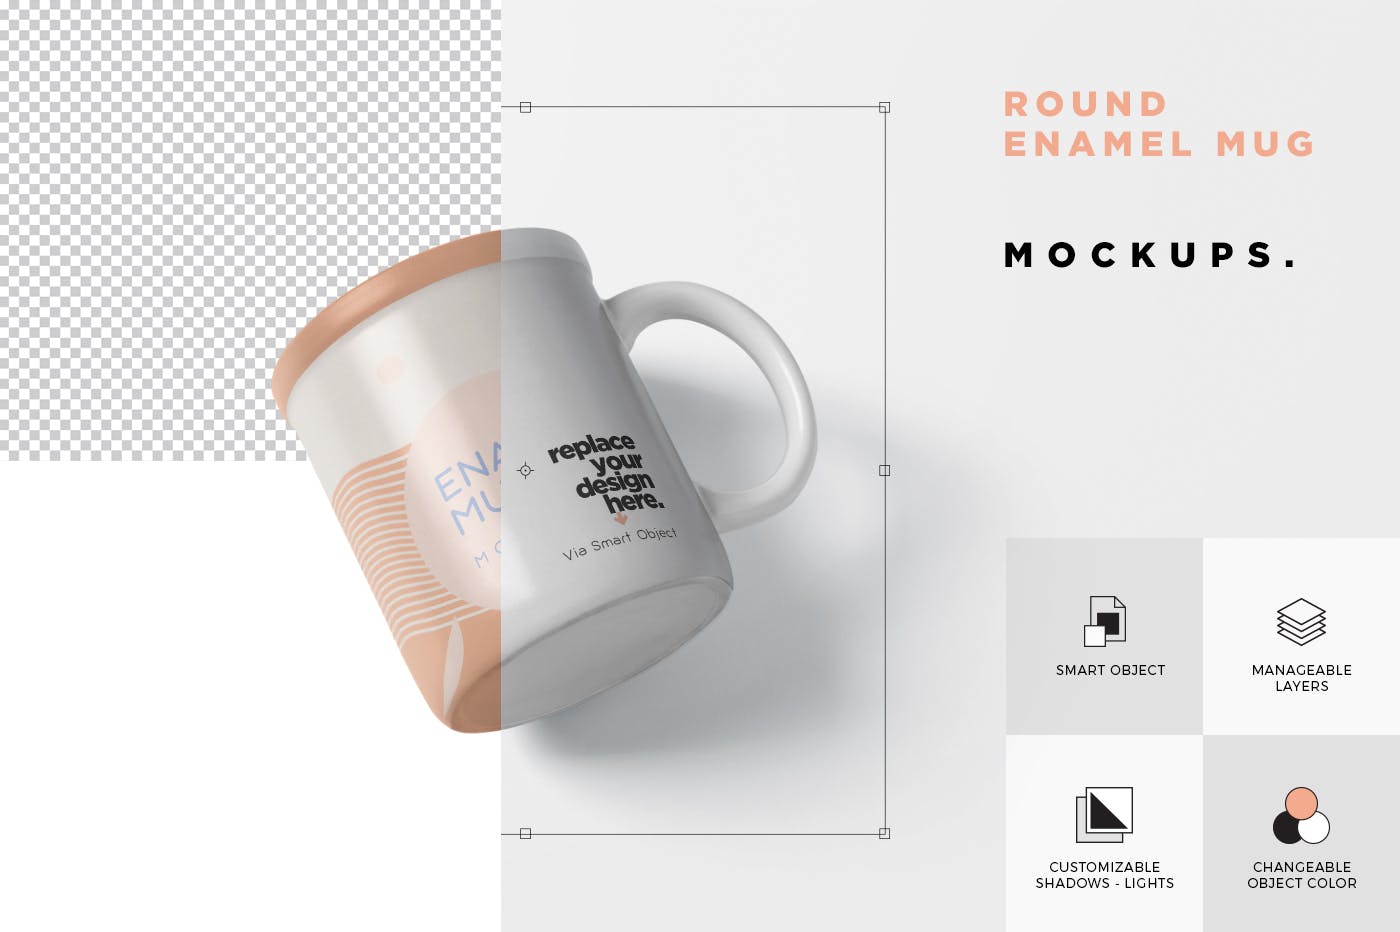 带把手圆形搪瓷杯马克杯图案设计素材库精选 Round Enamel Mug Mockup With Handle插图(5)